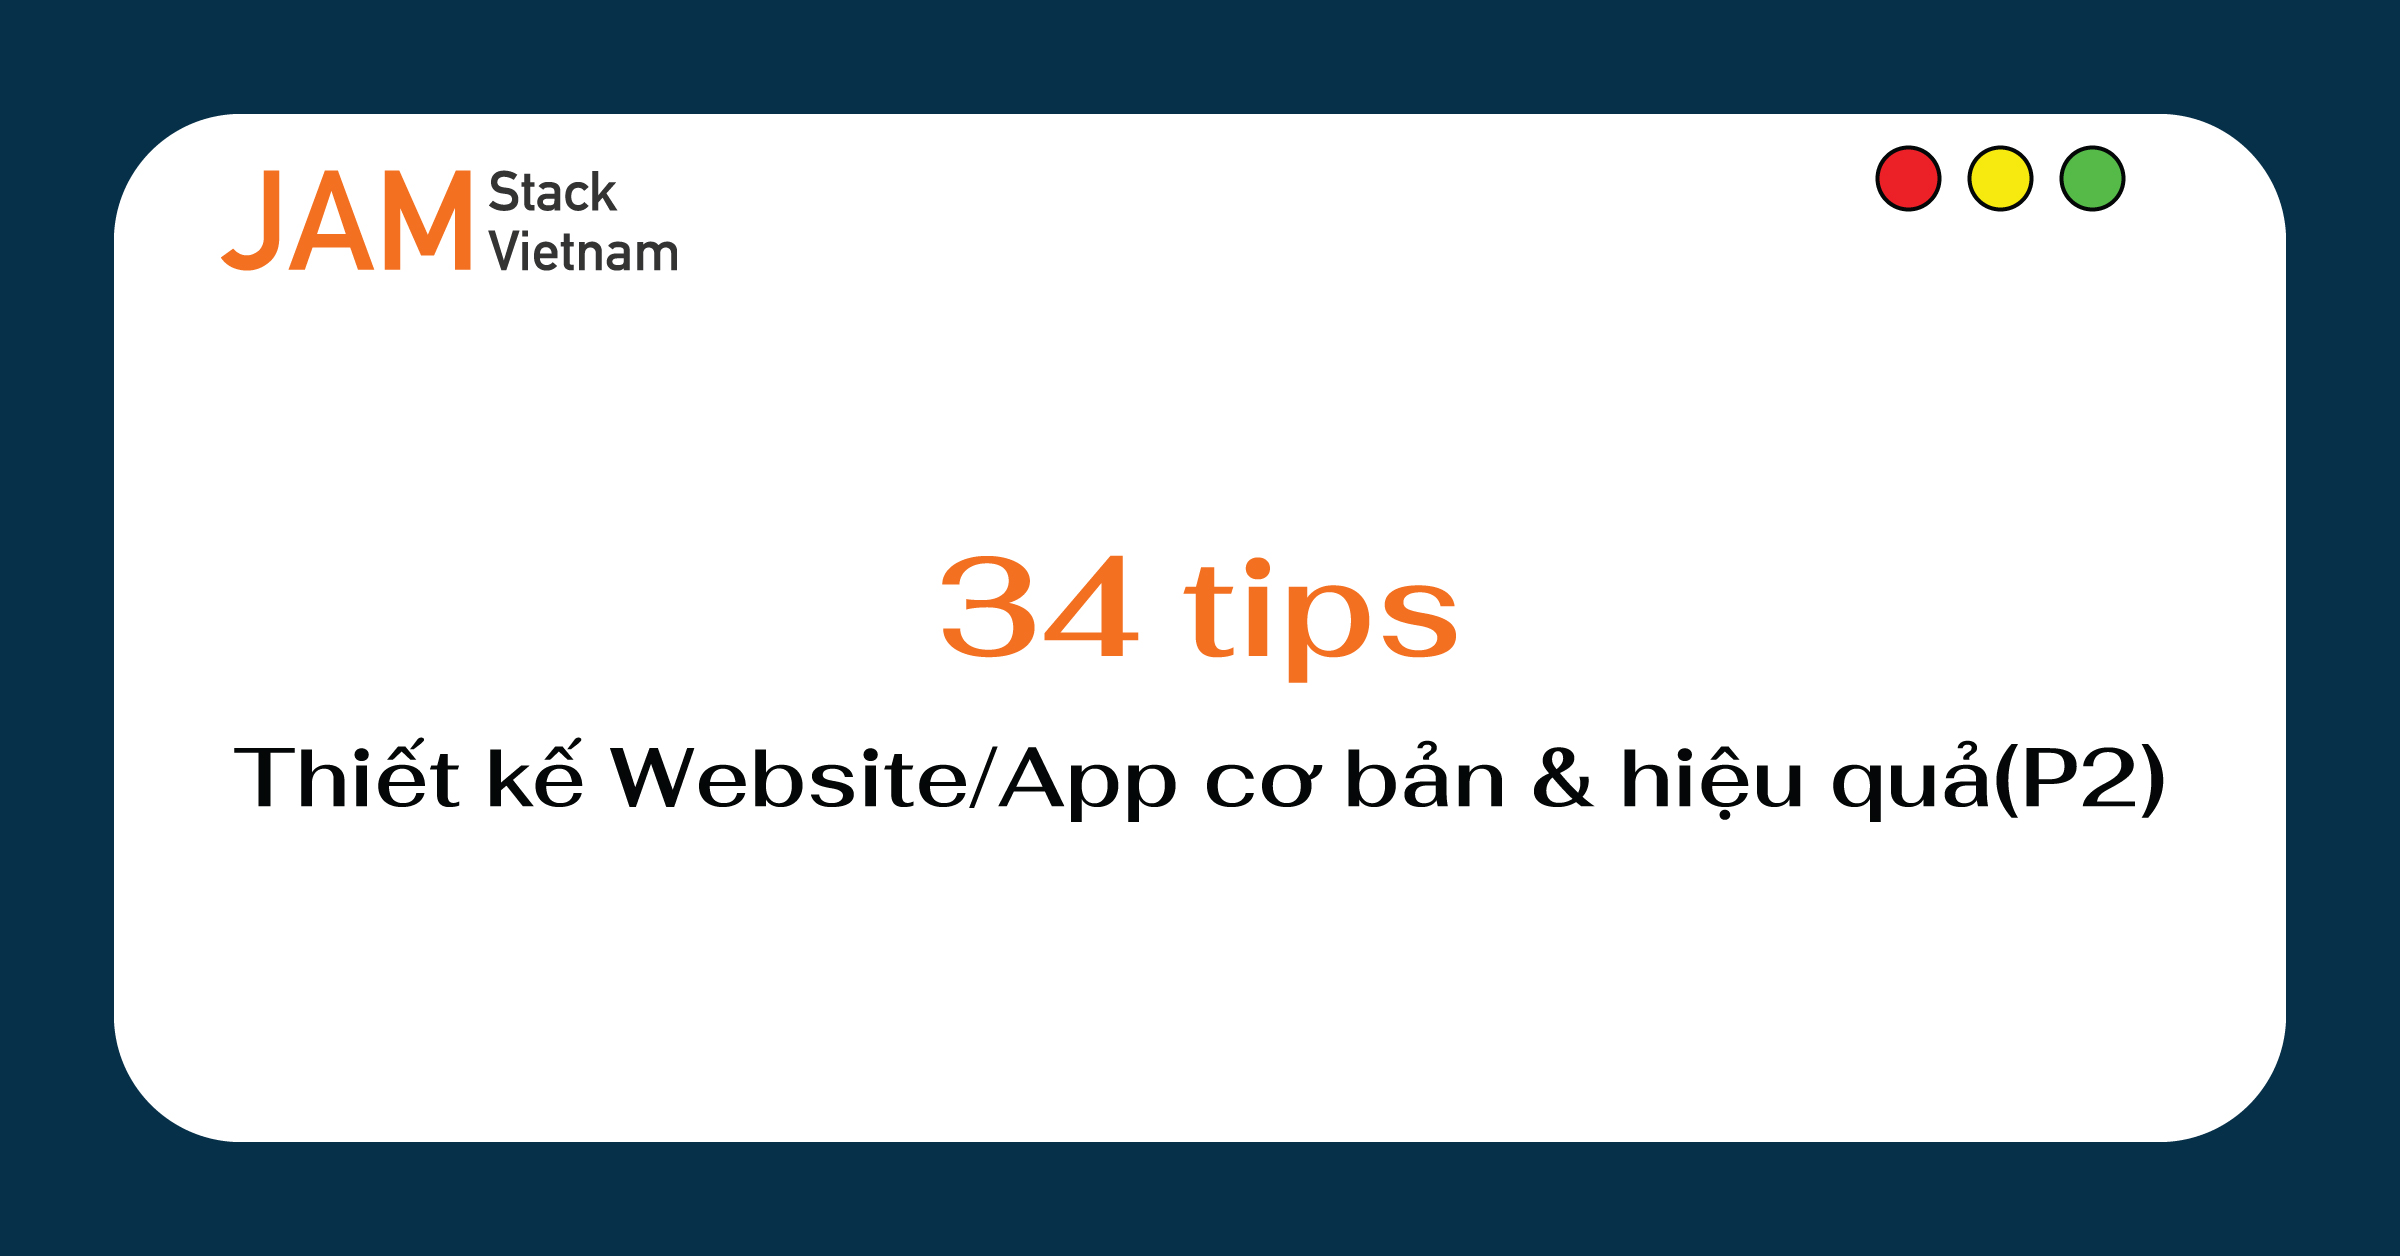 34 tips tối ưu thiết kế giao diện website/app cơ bản và hiệu quả (P2)